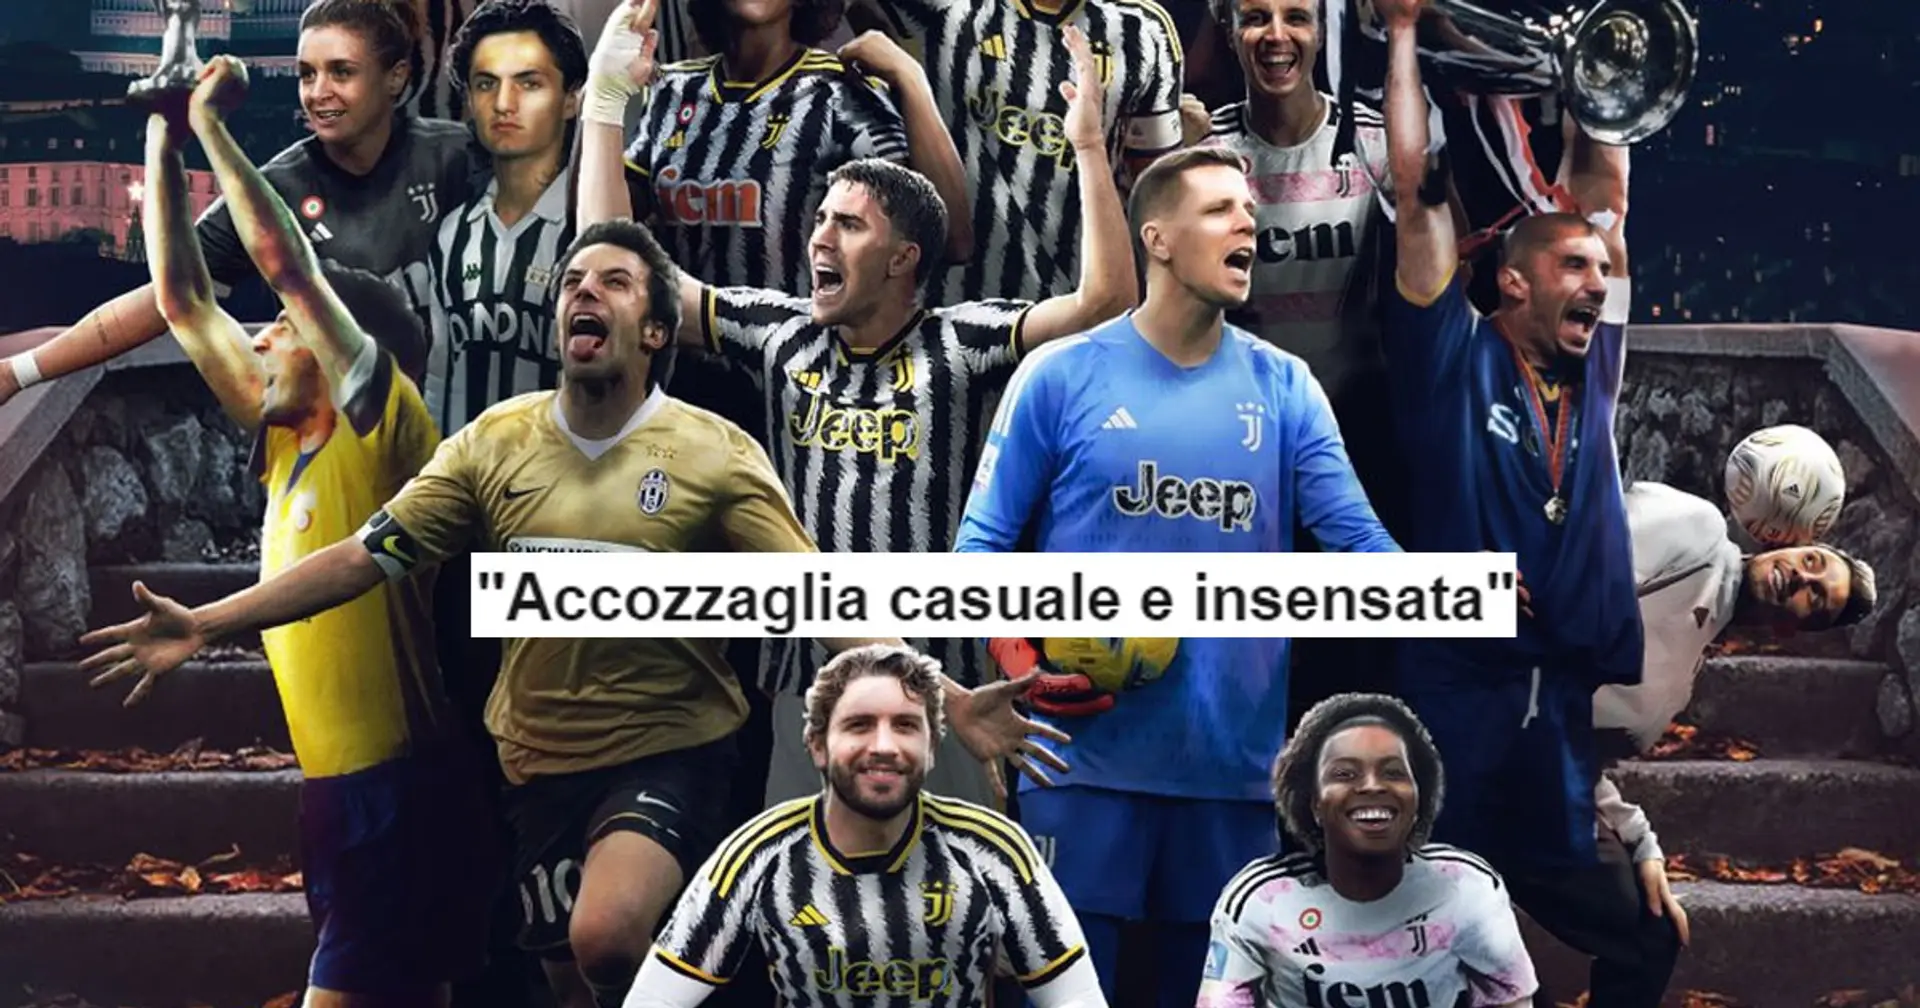 "Accozzaglia casuale e insensata", la Juventus celebra 126 anni di storia: gli auguri social dividono i tifosi